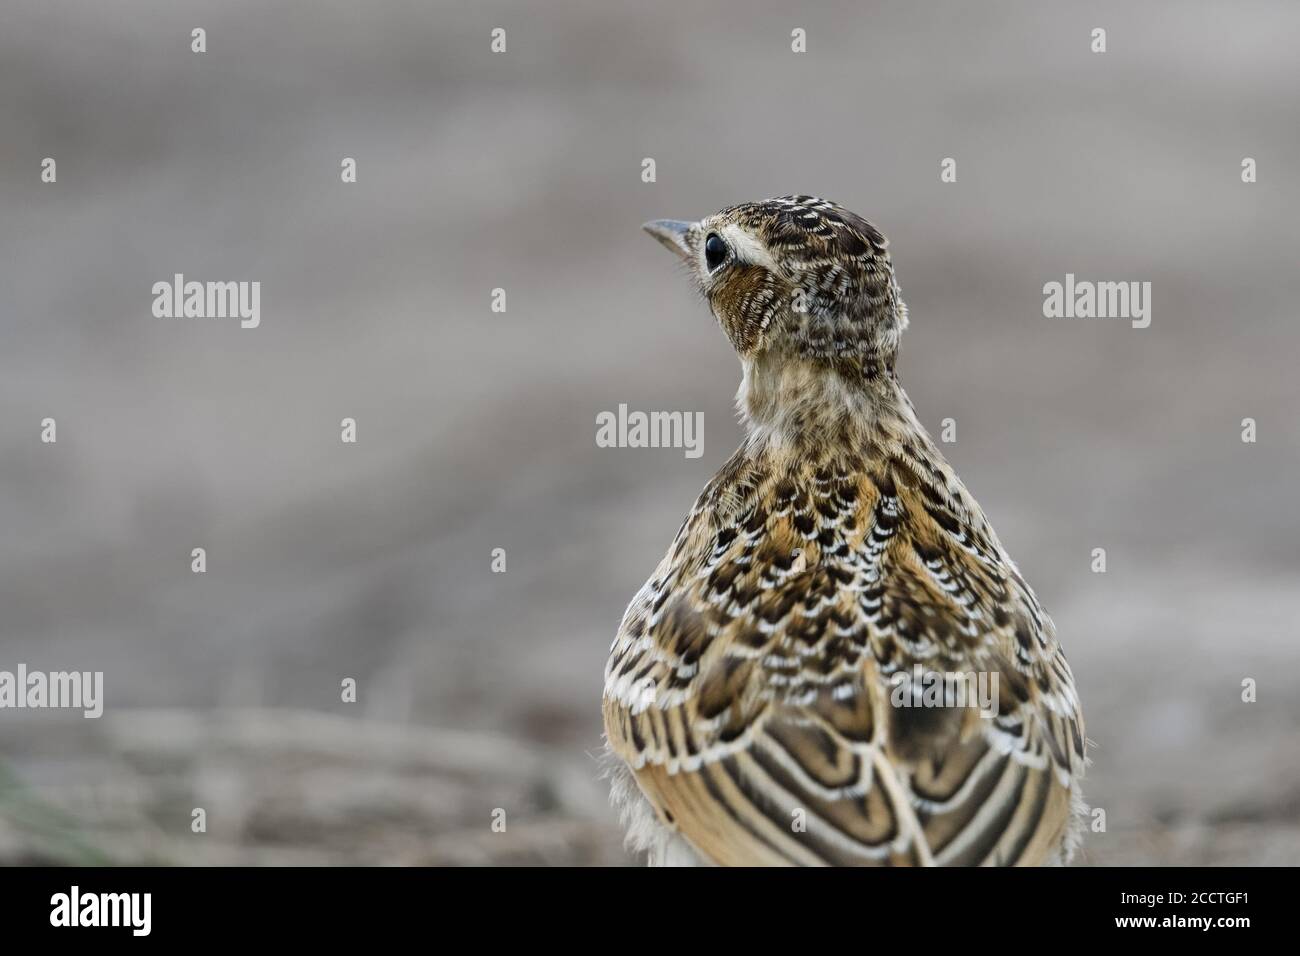 Skylark ( Alauda arvensis ) oiseau de terre ouverte, en danger par l'agriculture intensive, assis sur le sol, vue arrière, gros plan, faune, Europe. Banque D'Images